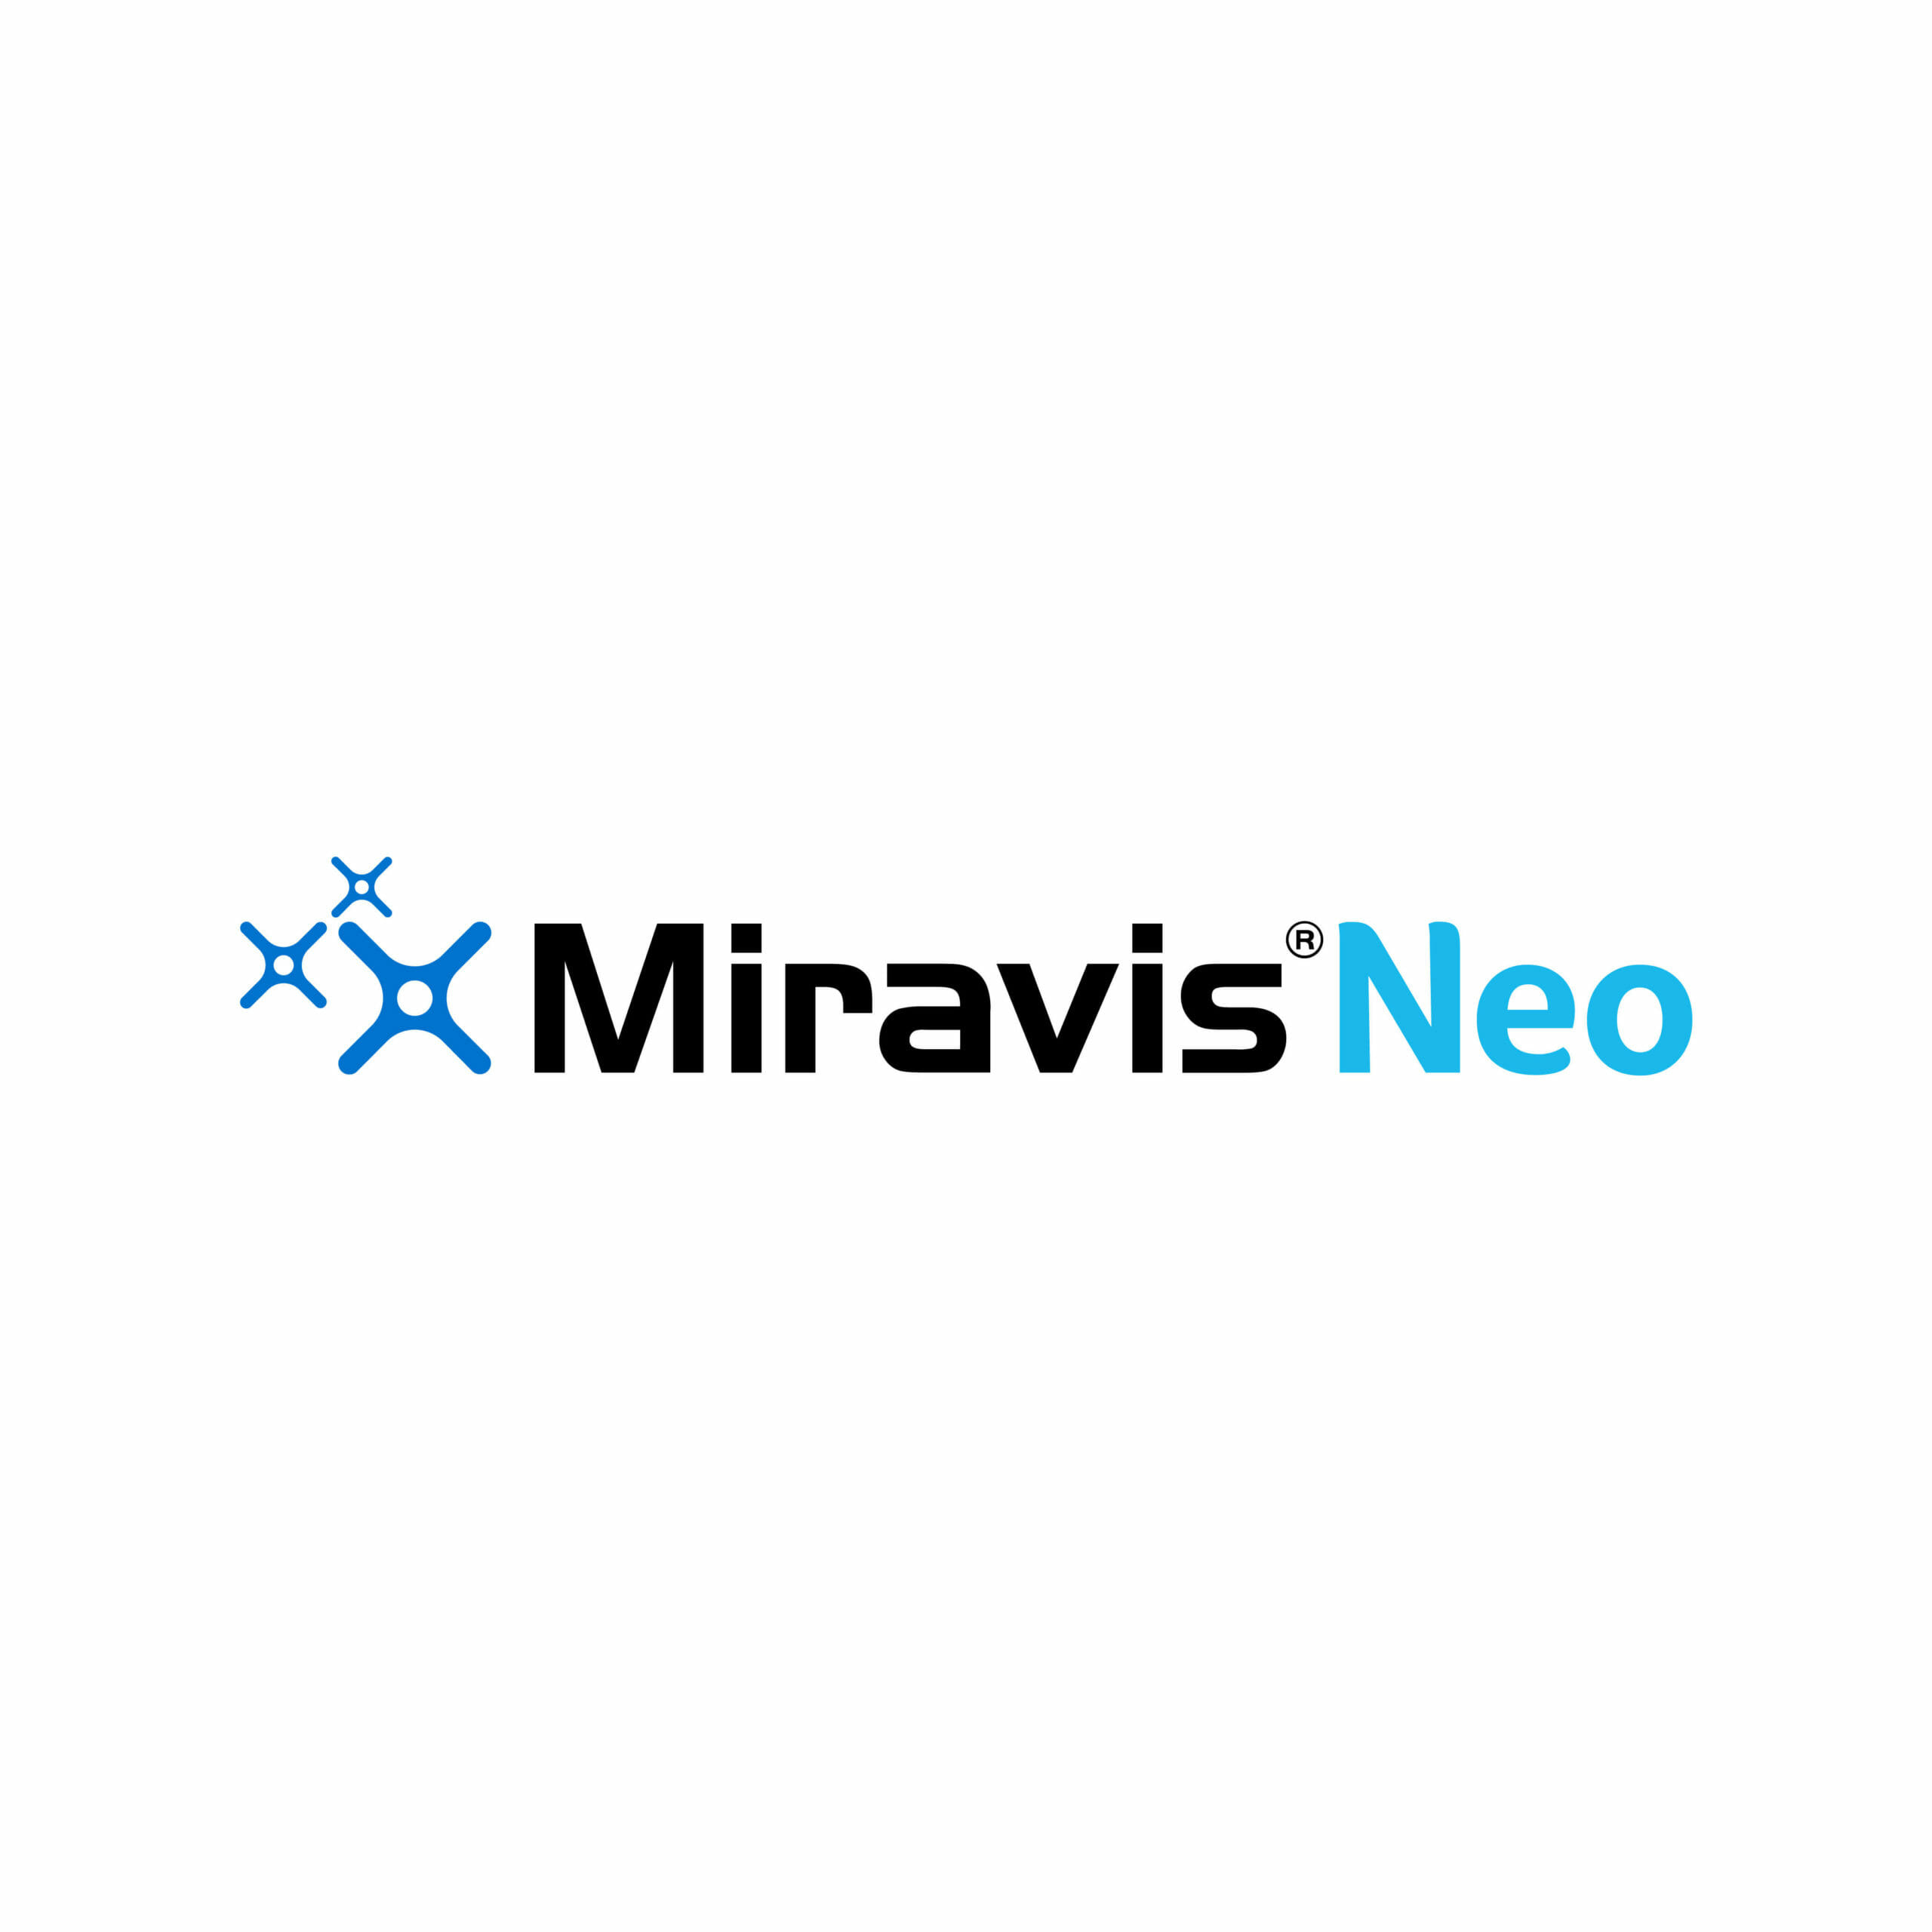 Miravis Neo